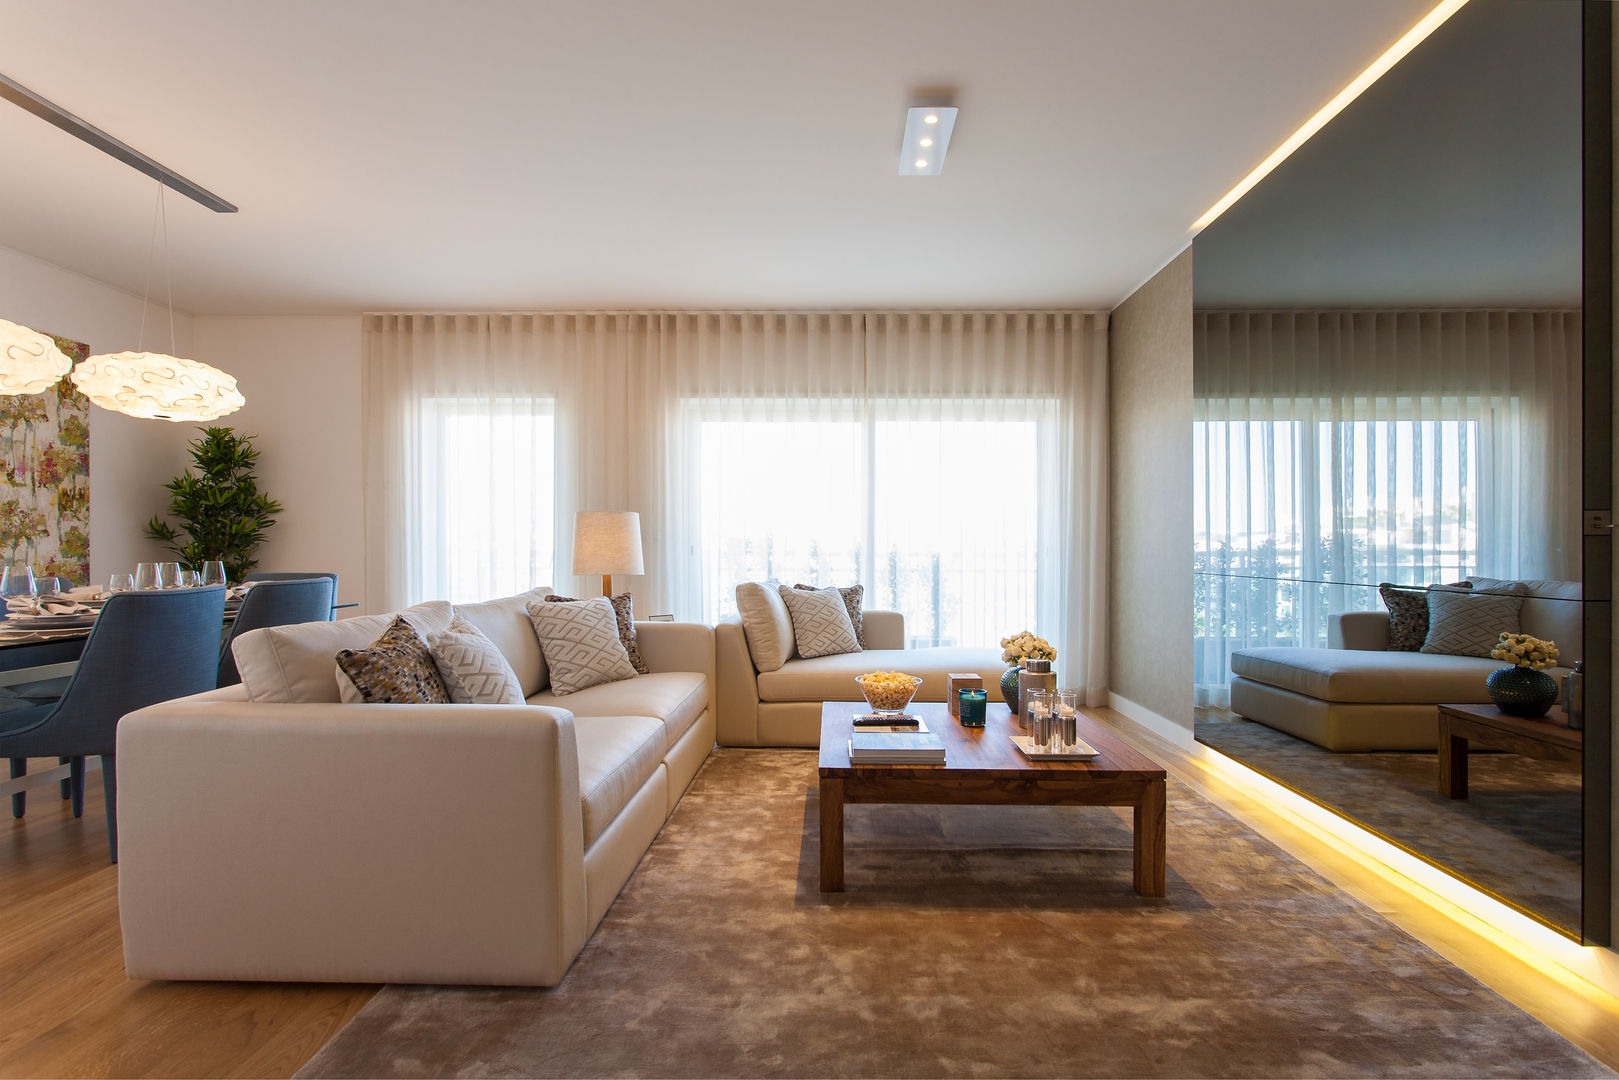 Andar Modelo - Oeiras, Traço Magenta - Design de Interiores Traço Magenta - Design de Interiores Livings de estilo moderno